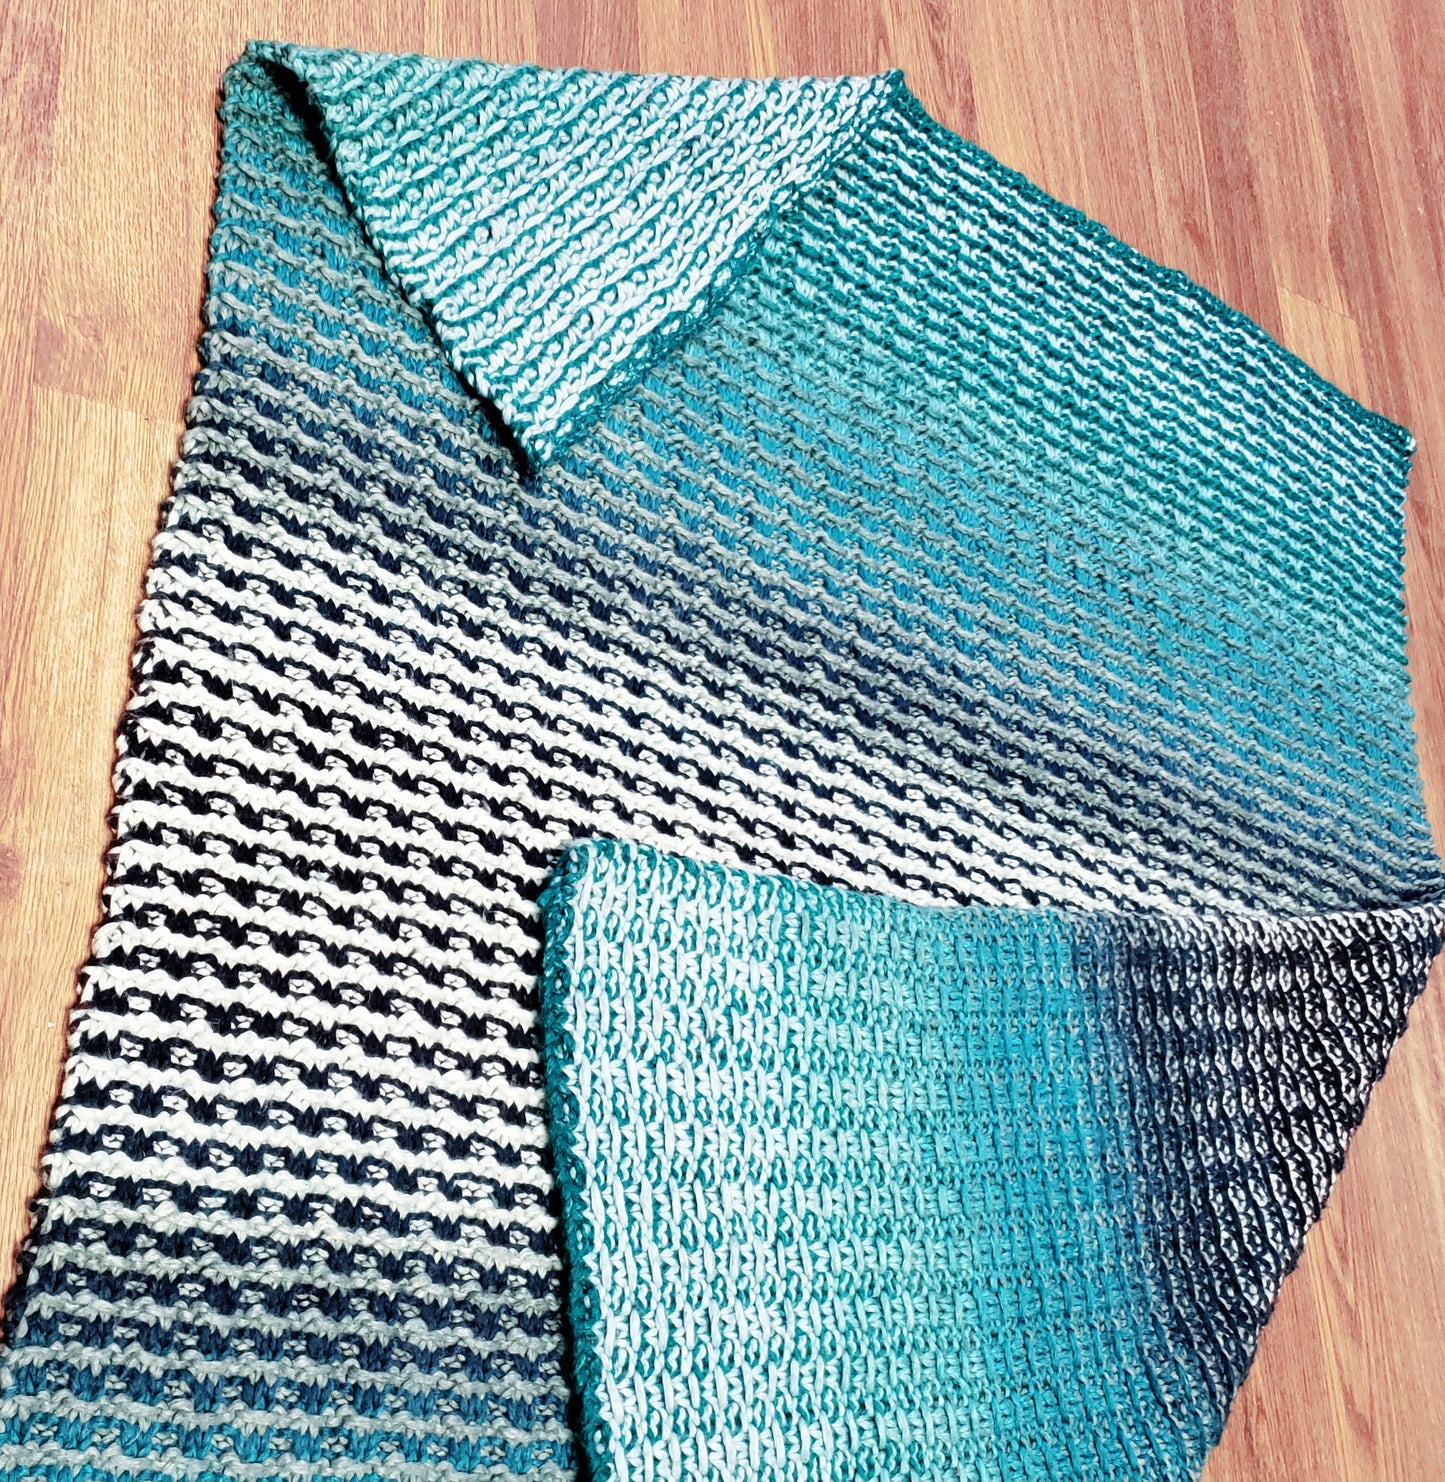 Slippery Blanket Kit